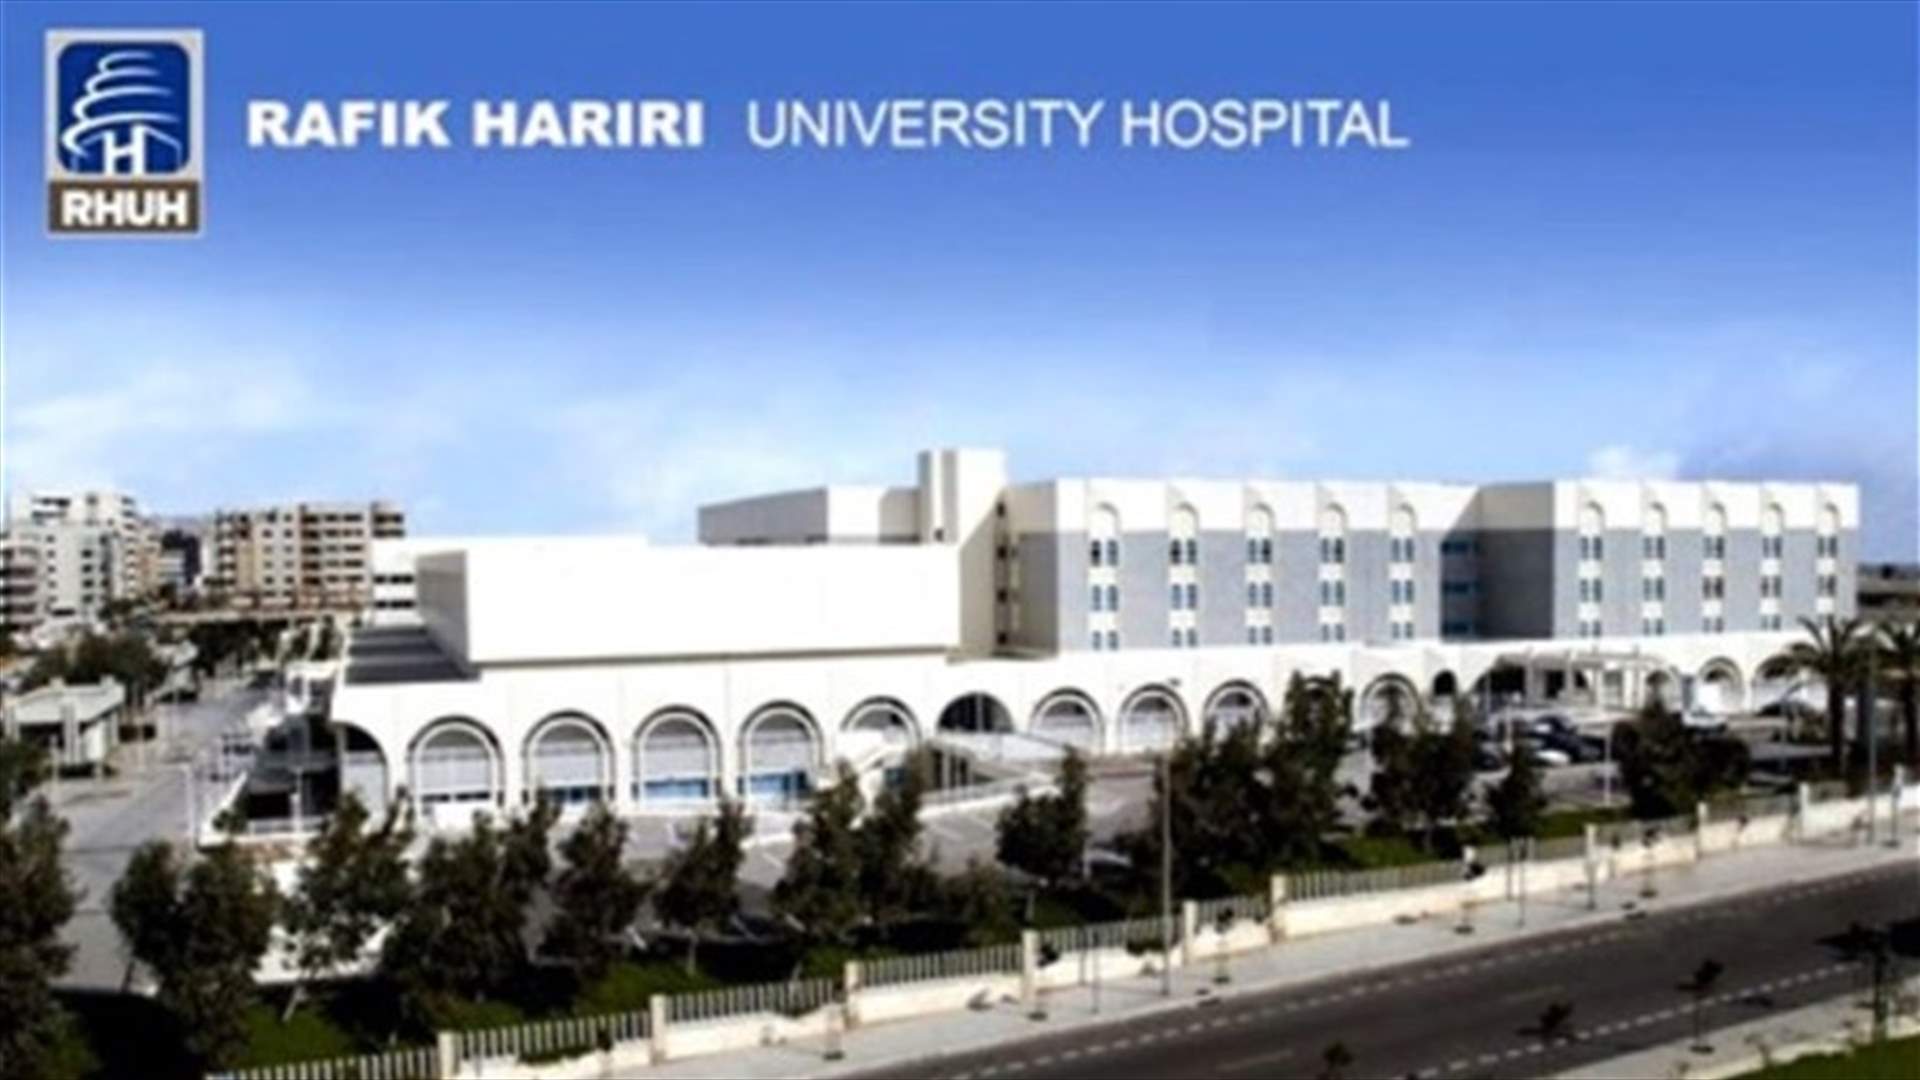 إليكم تقرير مستشفى الحريري اليومي عن كورونا...